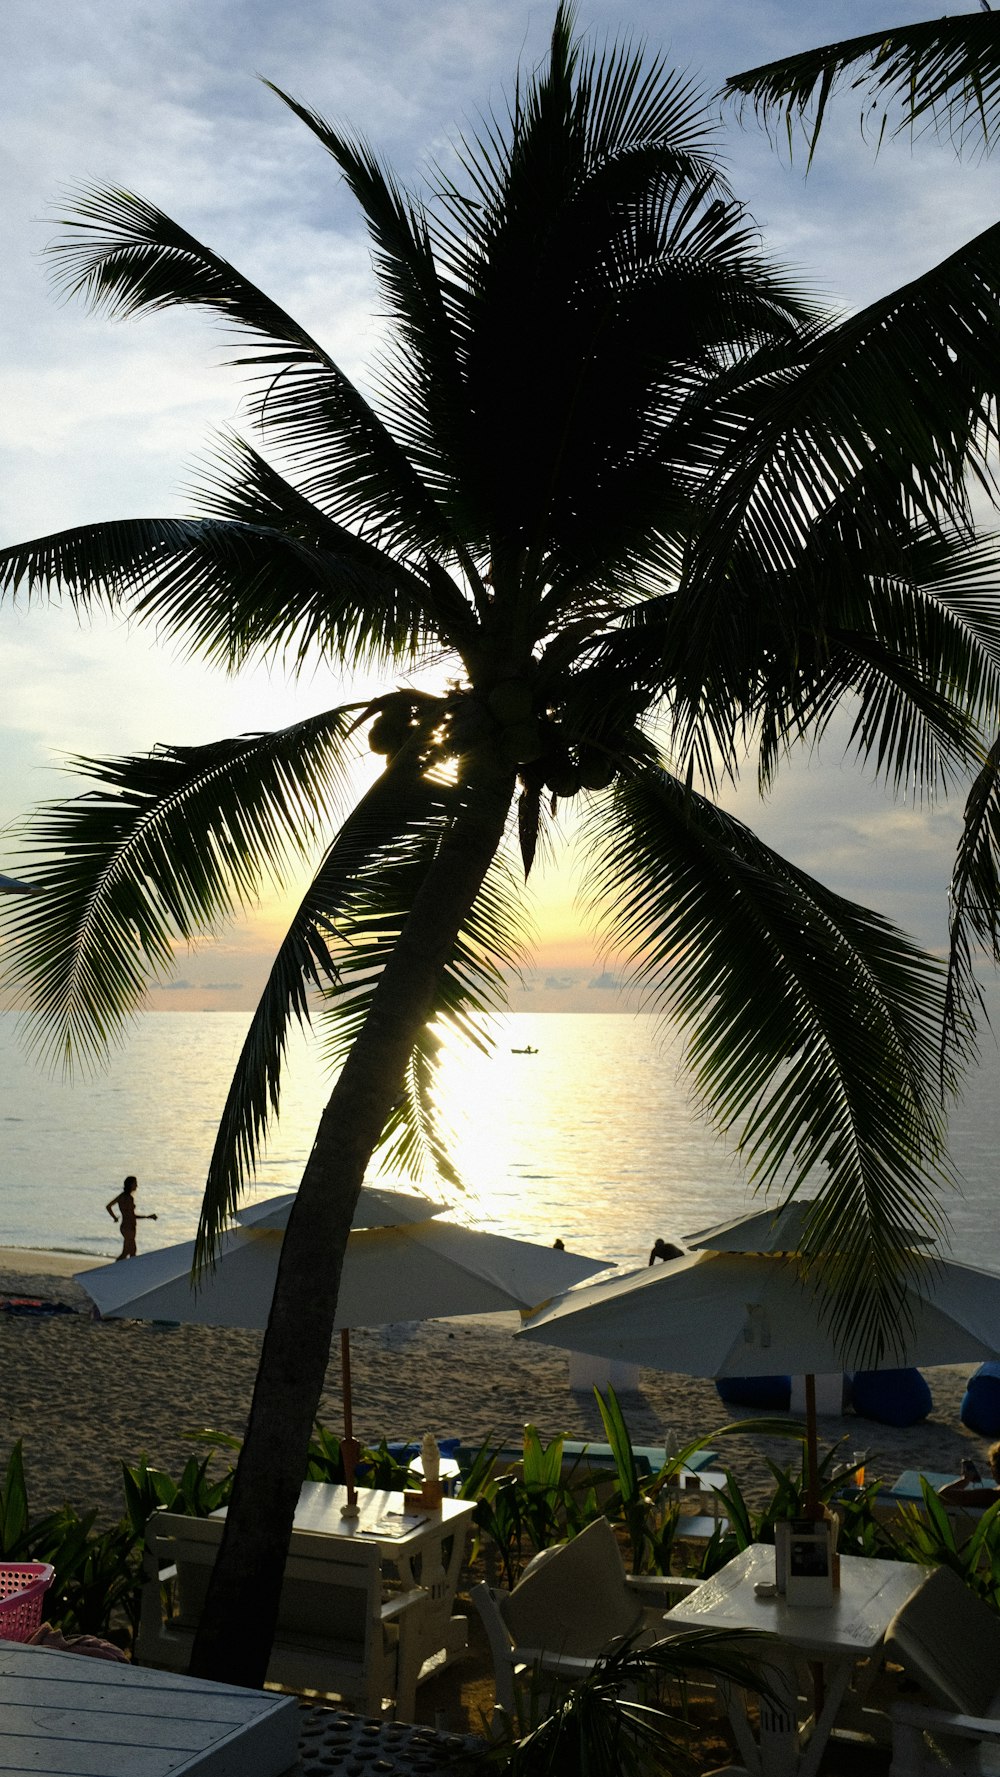 uma palmeira em uma praia